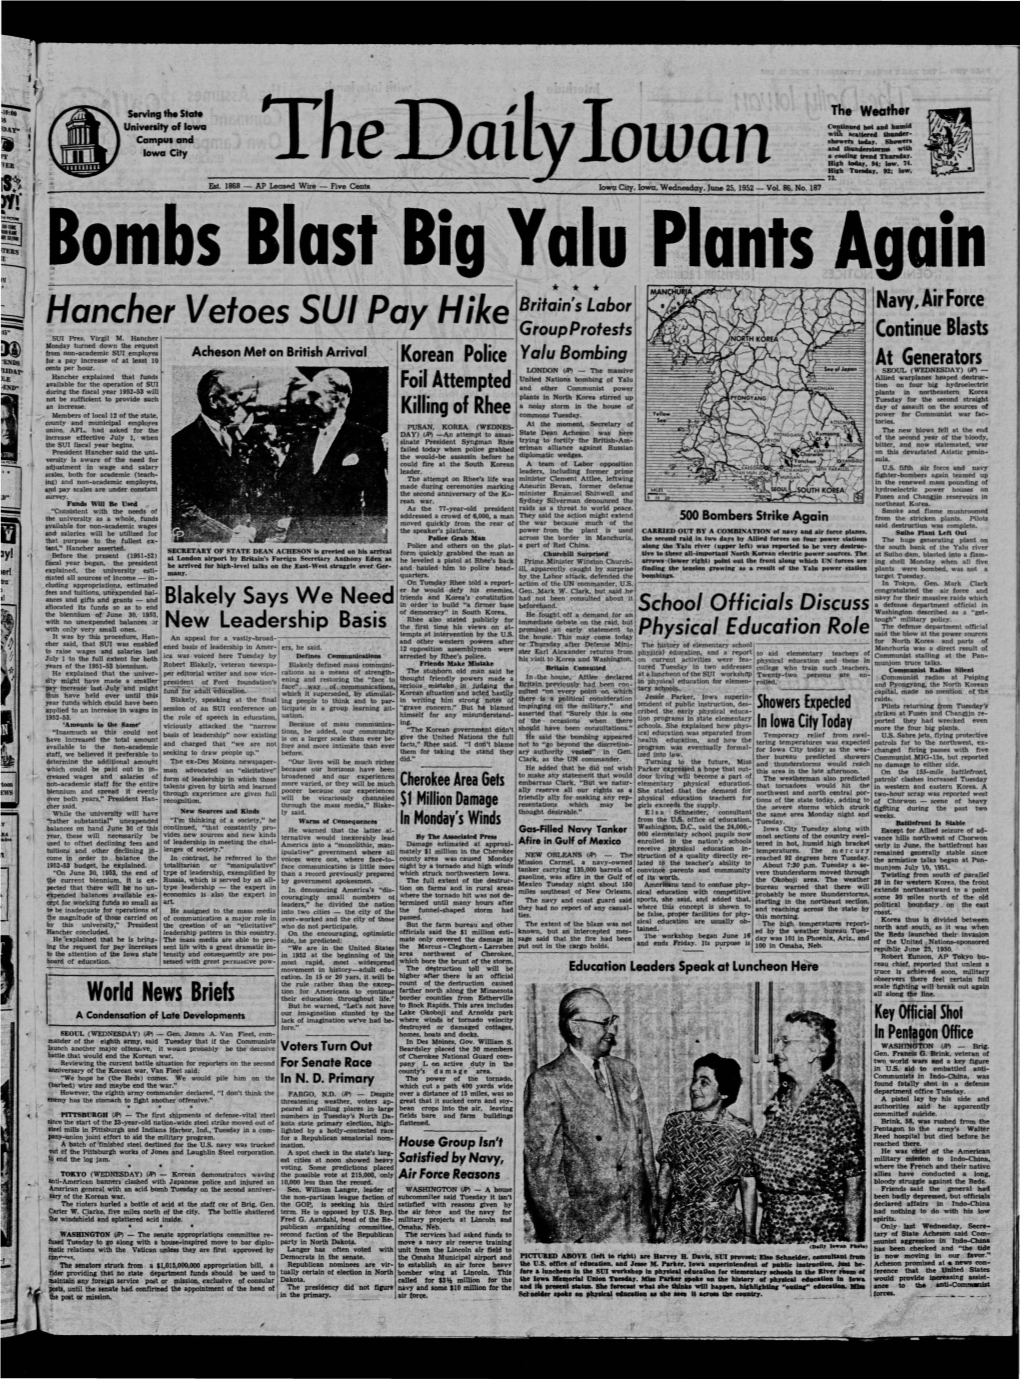 Daily Iowan (Iowa City, Iowa), 1952-06-25